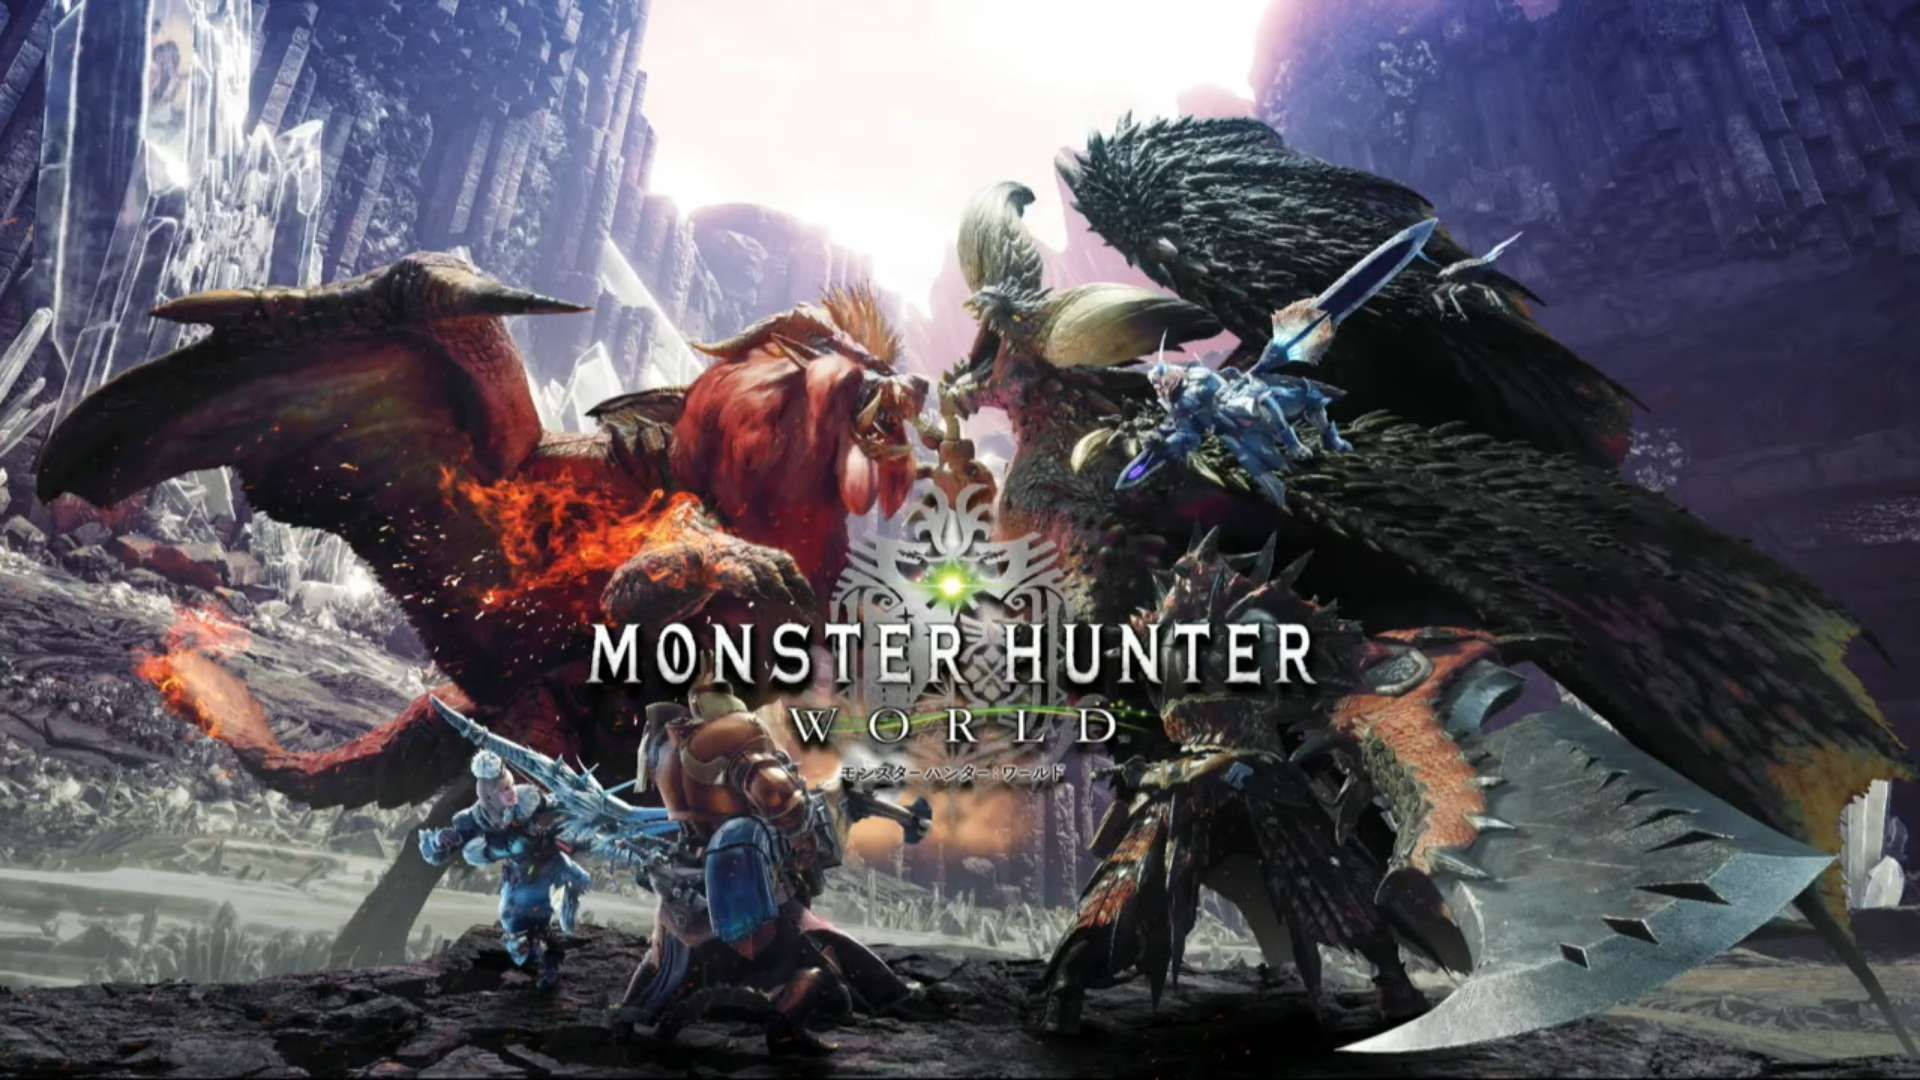 Monster Hunter World Teostra Vs Nergigante Background